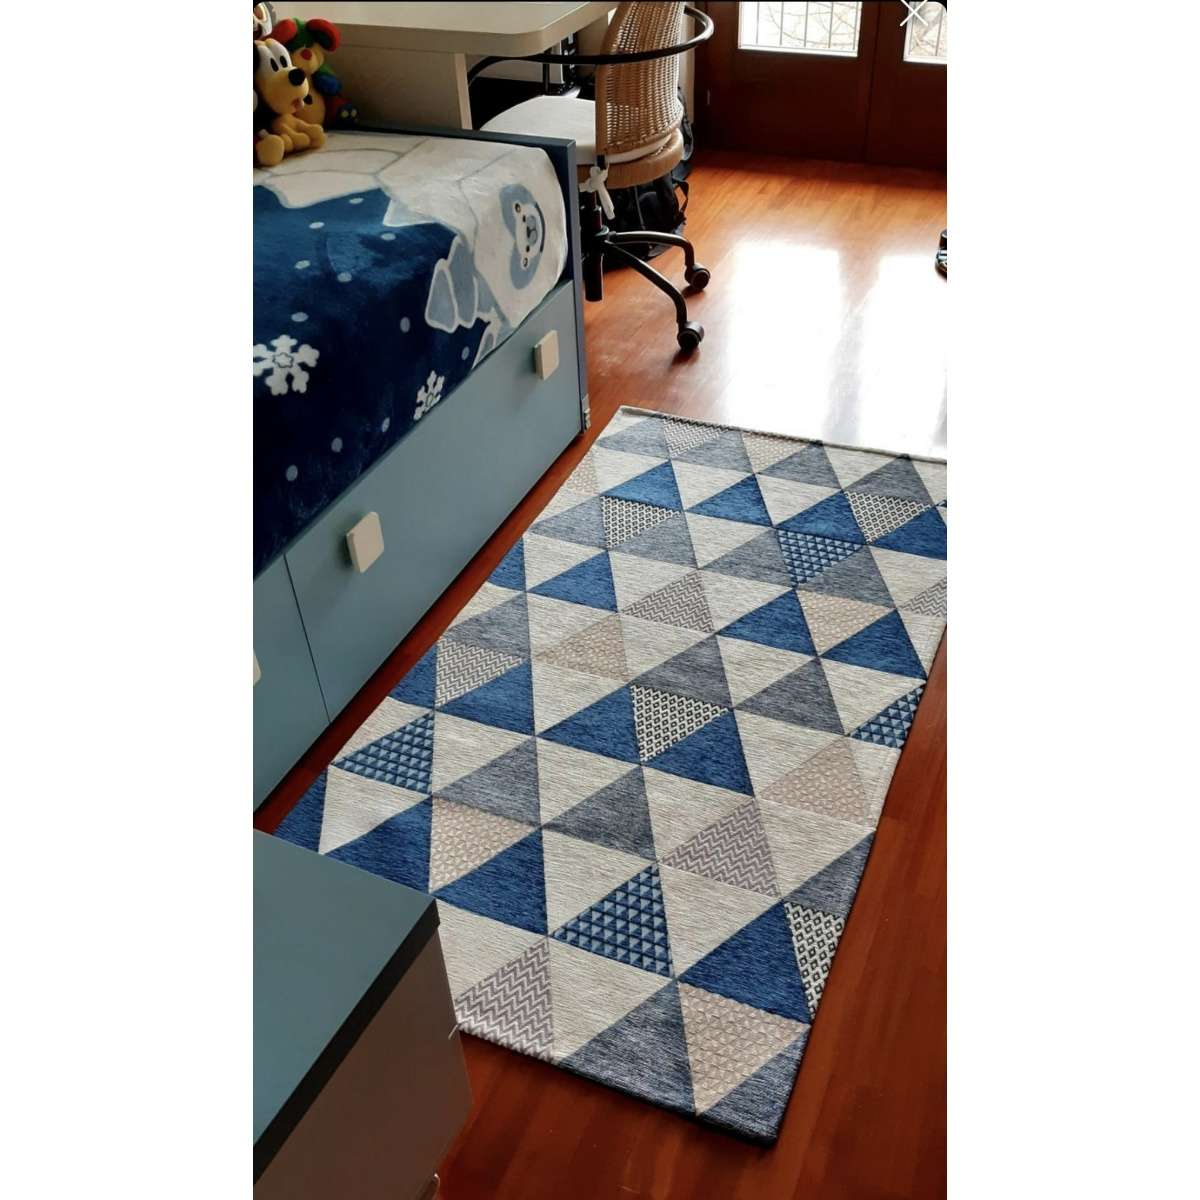 Immagine del prodotto Tappeto Triangoli Bluette Antiscivolo e Lavabile in Lavatrice | Pietro Zanetti Home